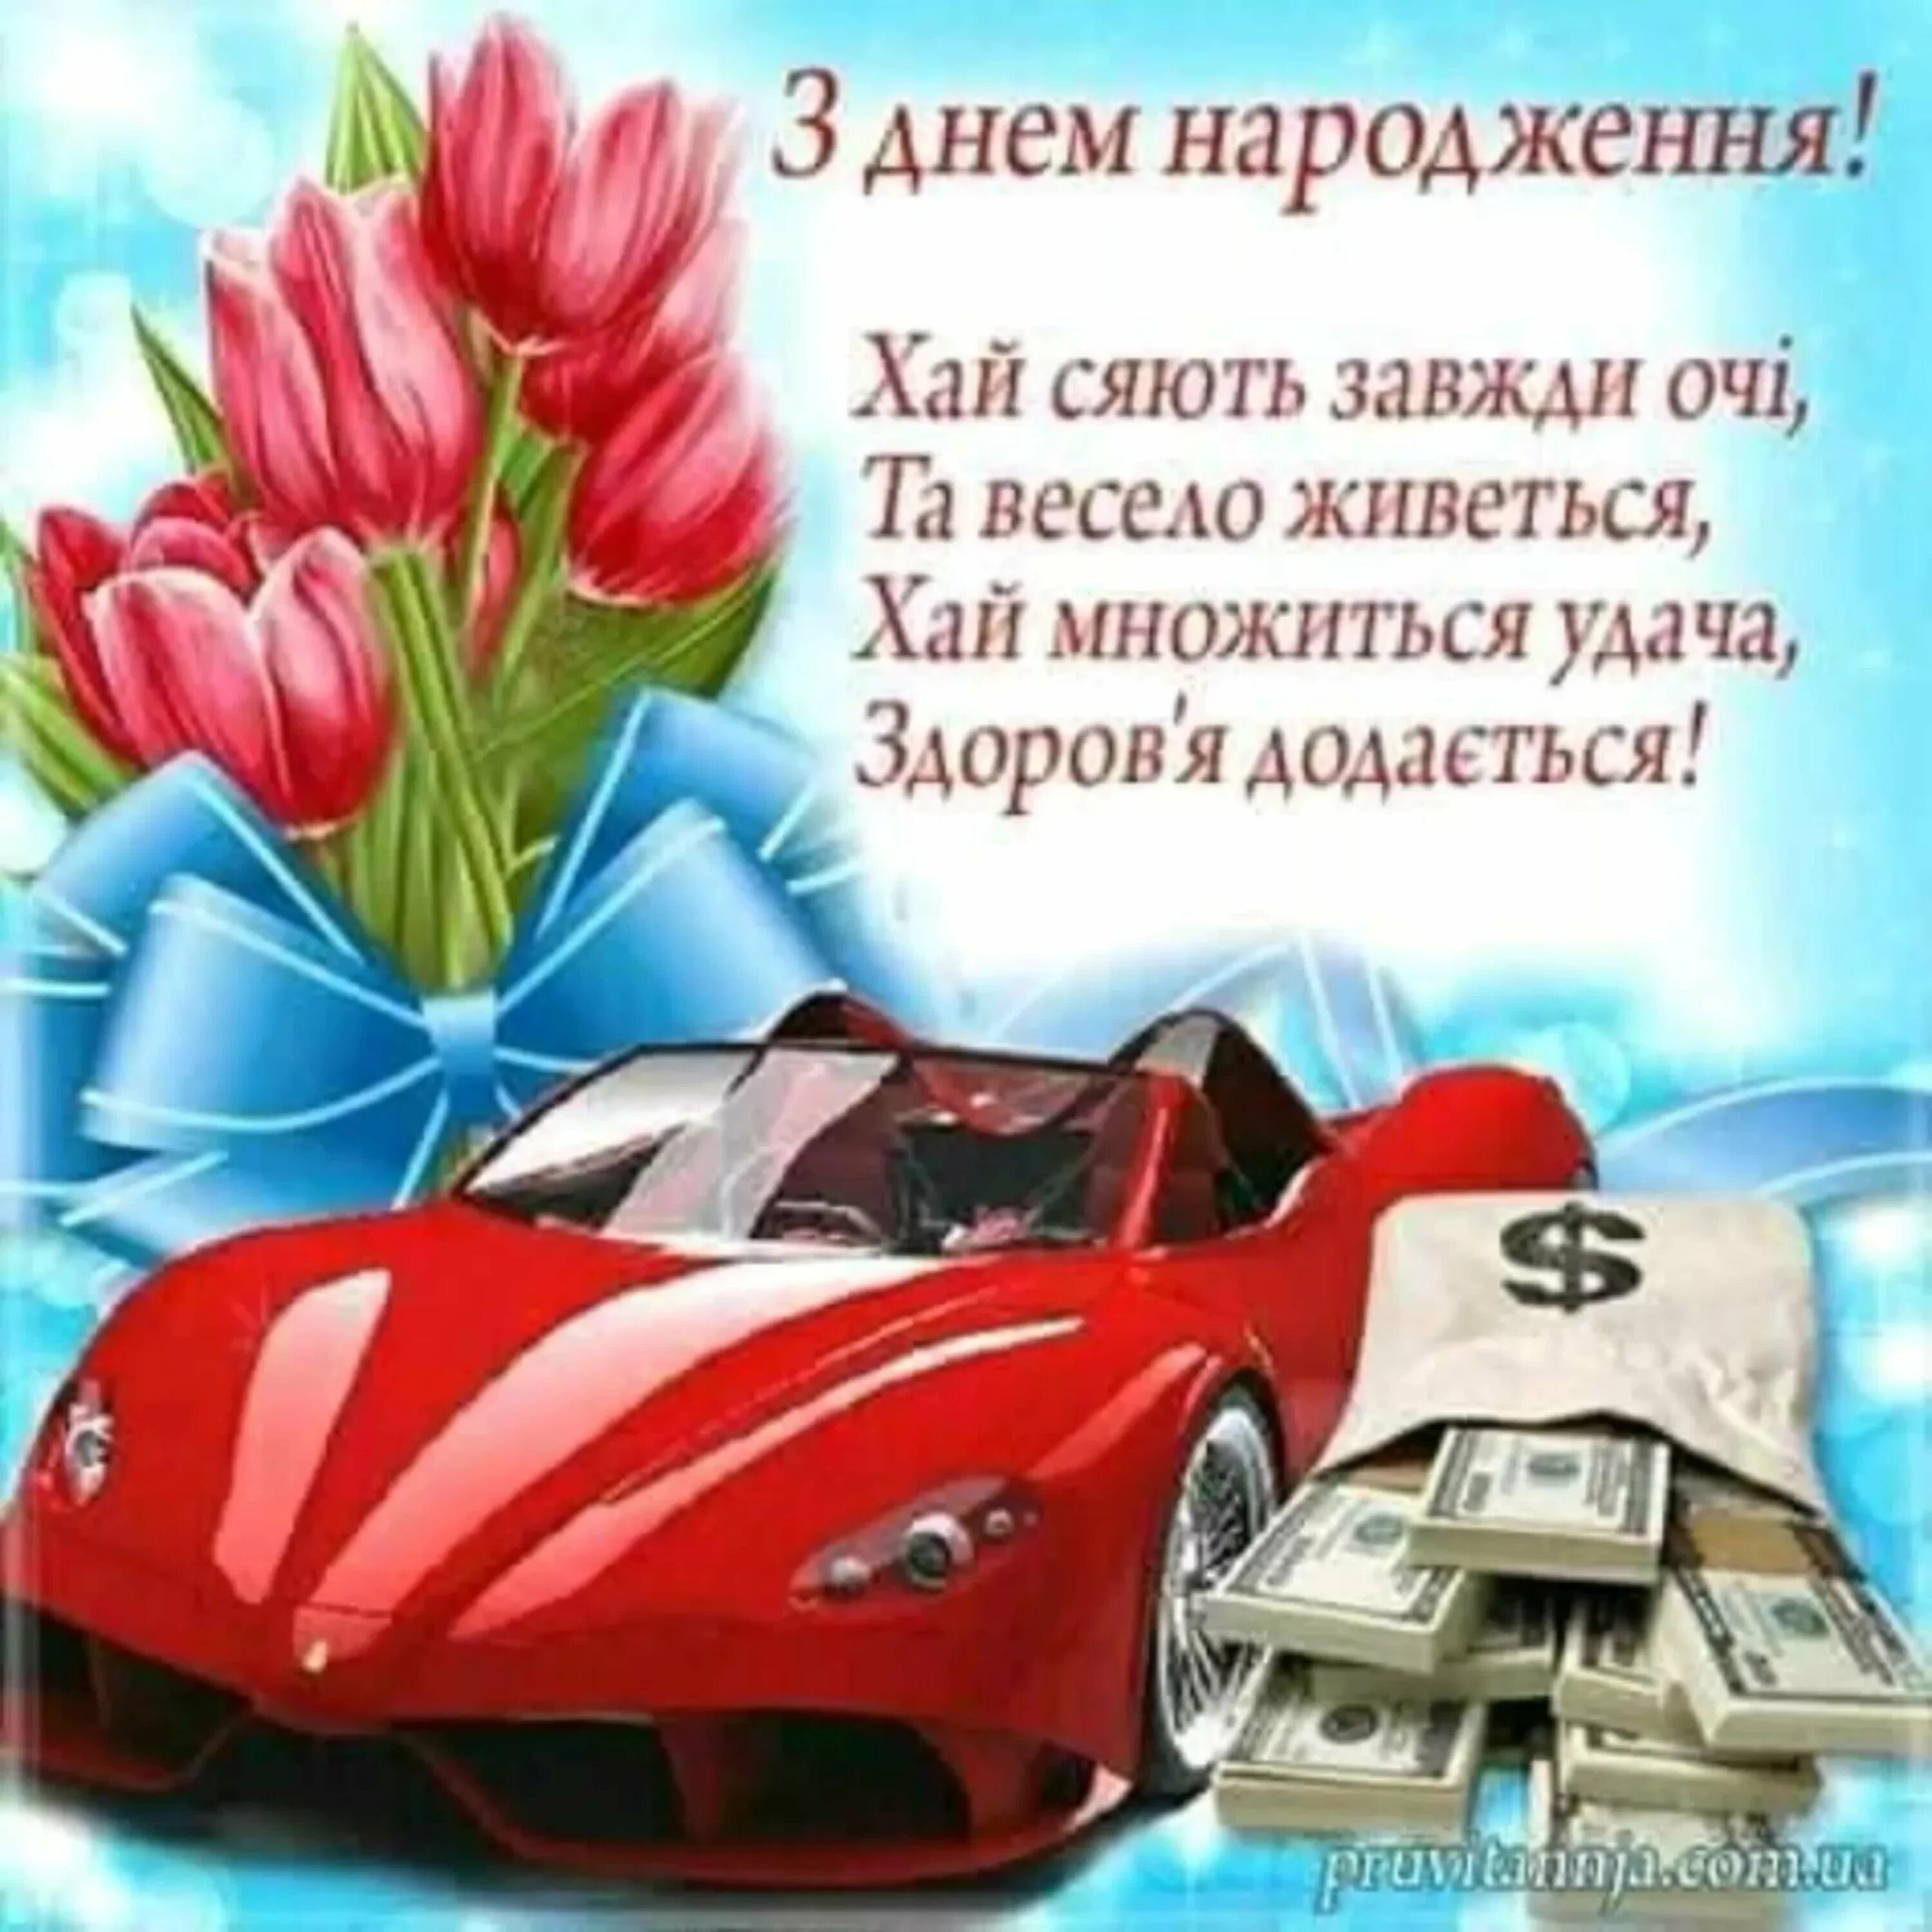 З днем народження. Поздравление с днем рождения на украинском. Поздравление на украинском для мужчины. Поздравления с днём рождения на украинском мужчине. Поздравление на украинском с днем рождения мужчине